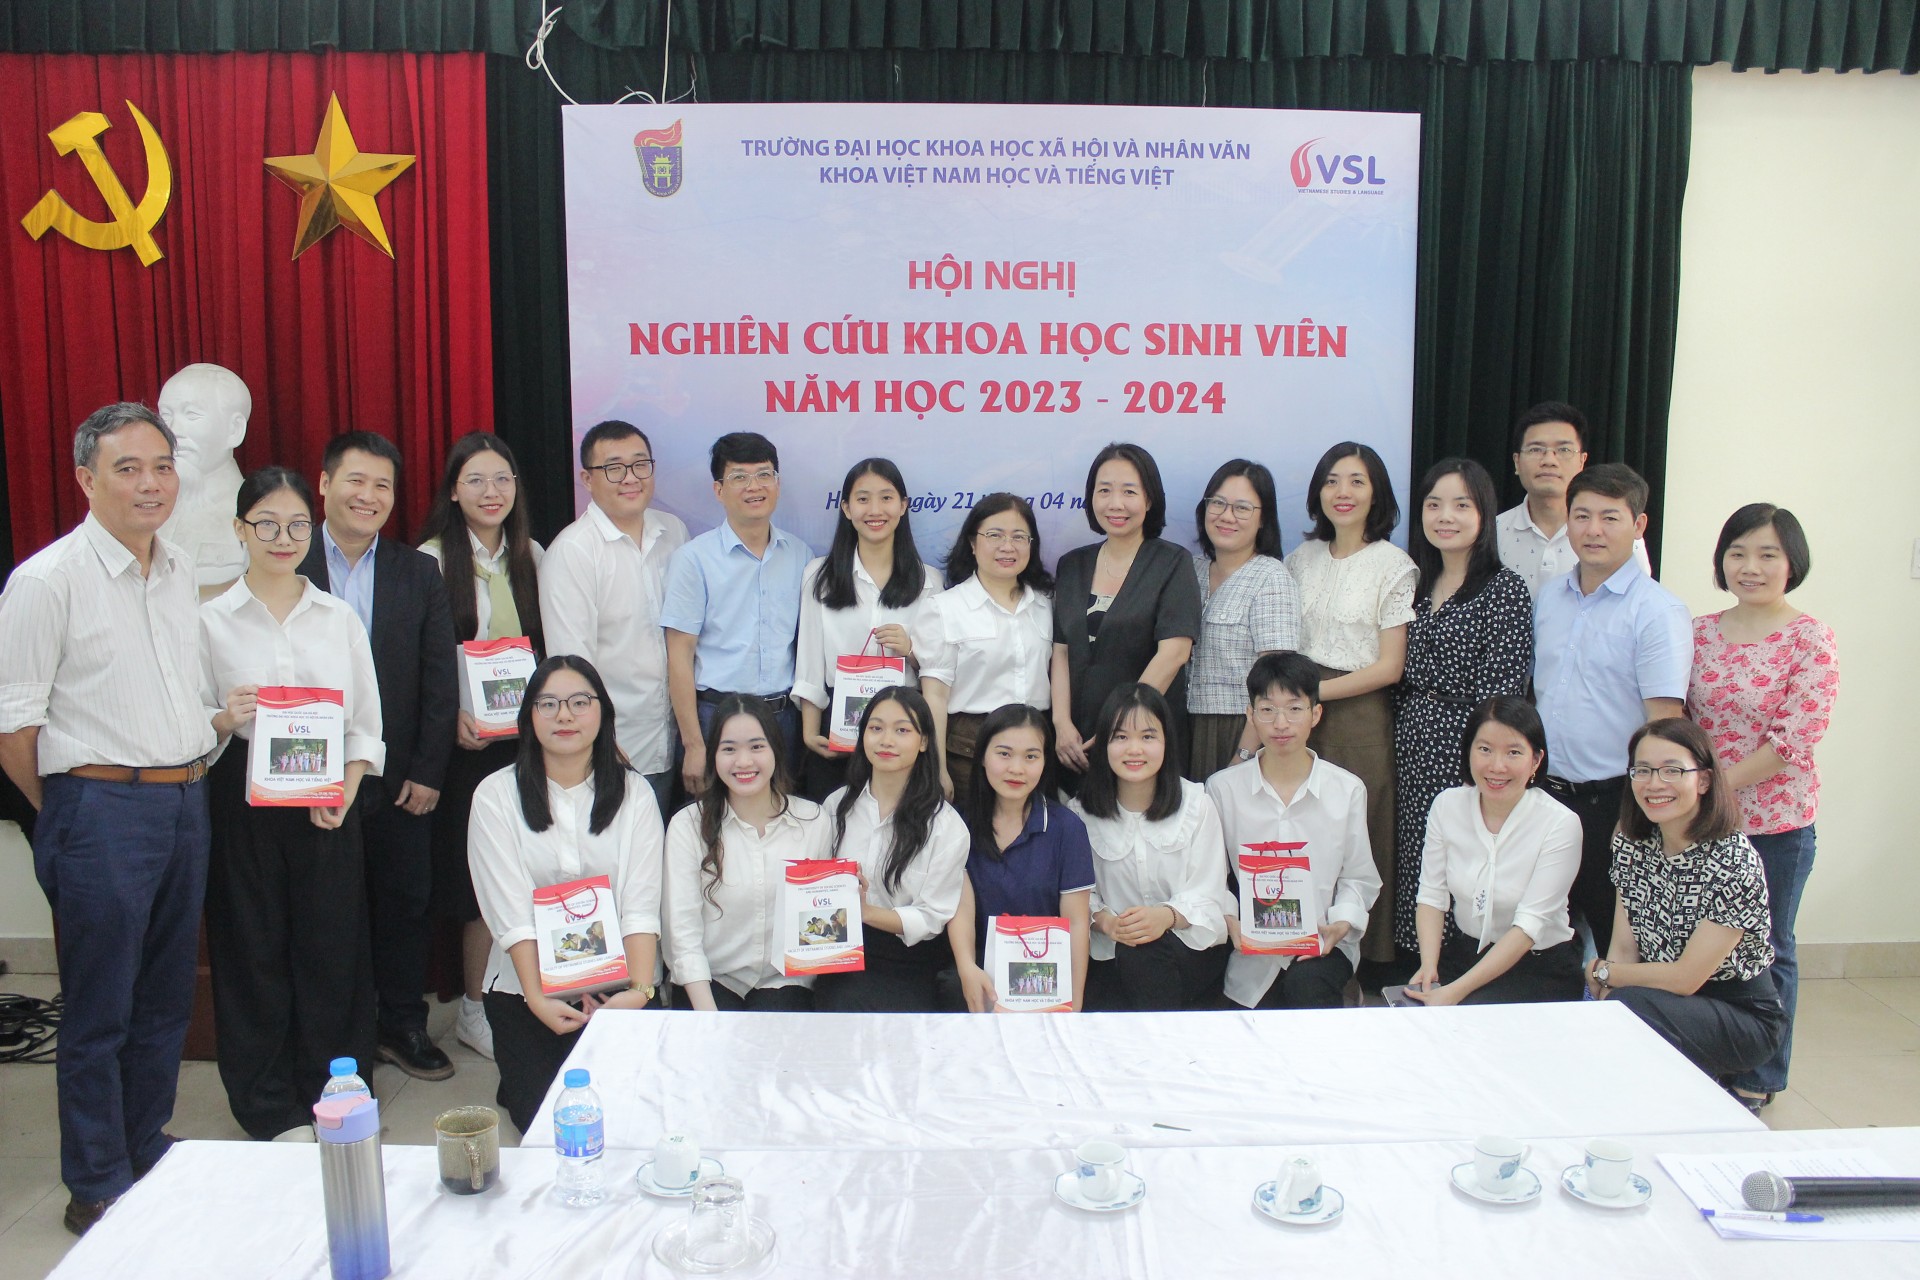 Khoa Việt Nam học và Tiếng Việt tổ chức Hội nghị Nghiên cứu Khoa học Sinh viên năm học 2023 - 2024  cứu